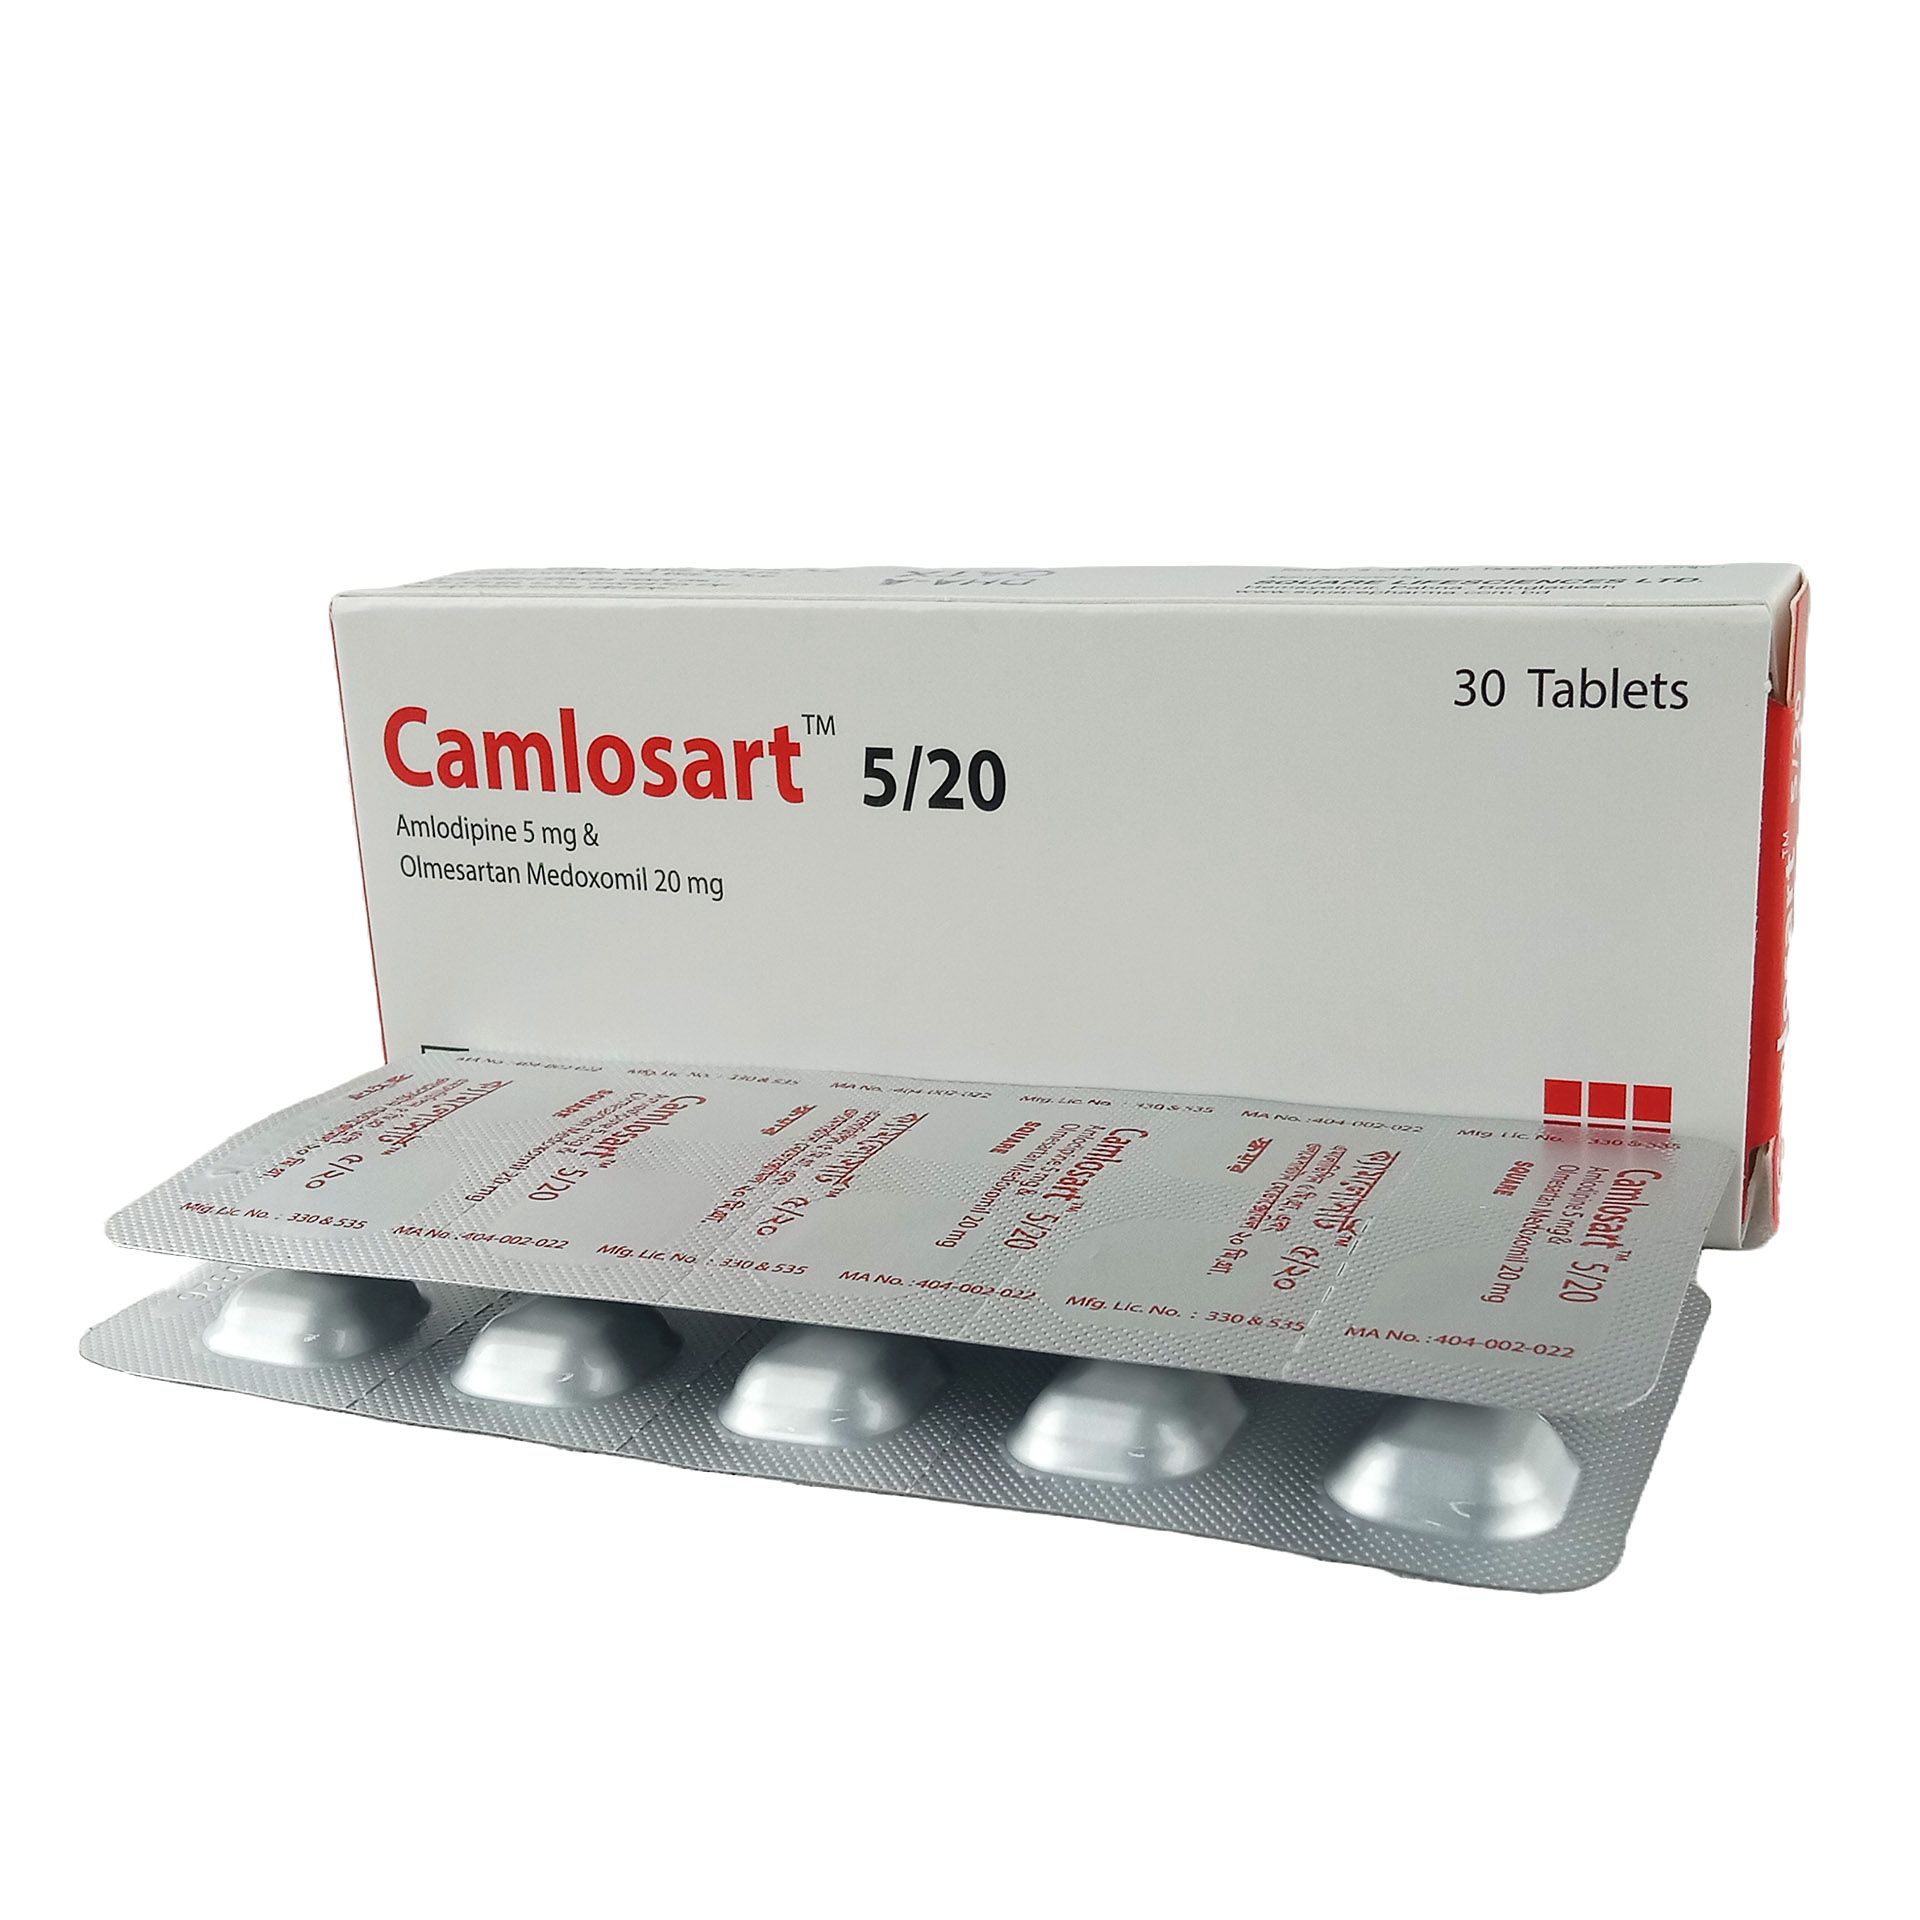 Camlosart 5/20 5mg+20mg Tablet